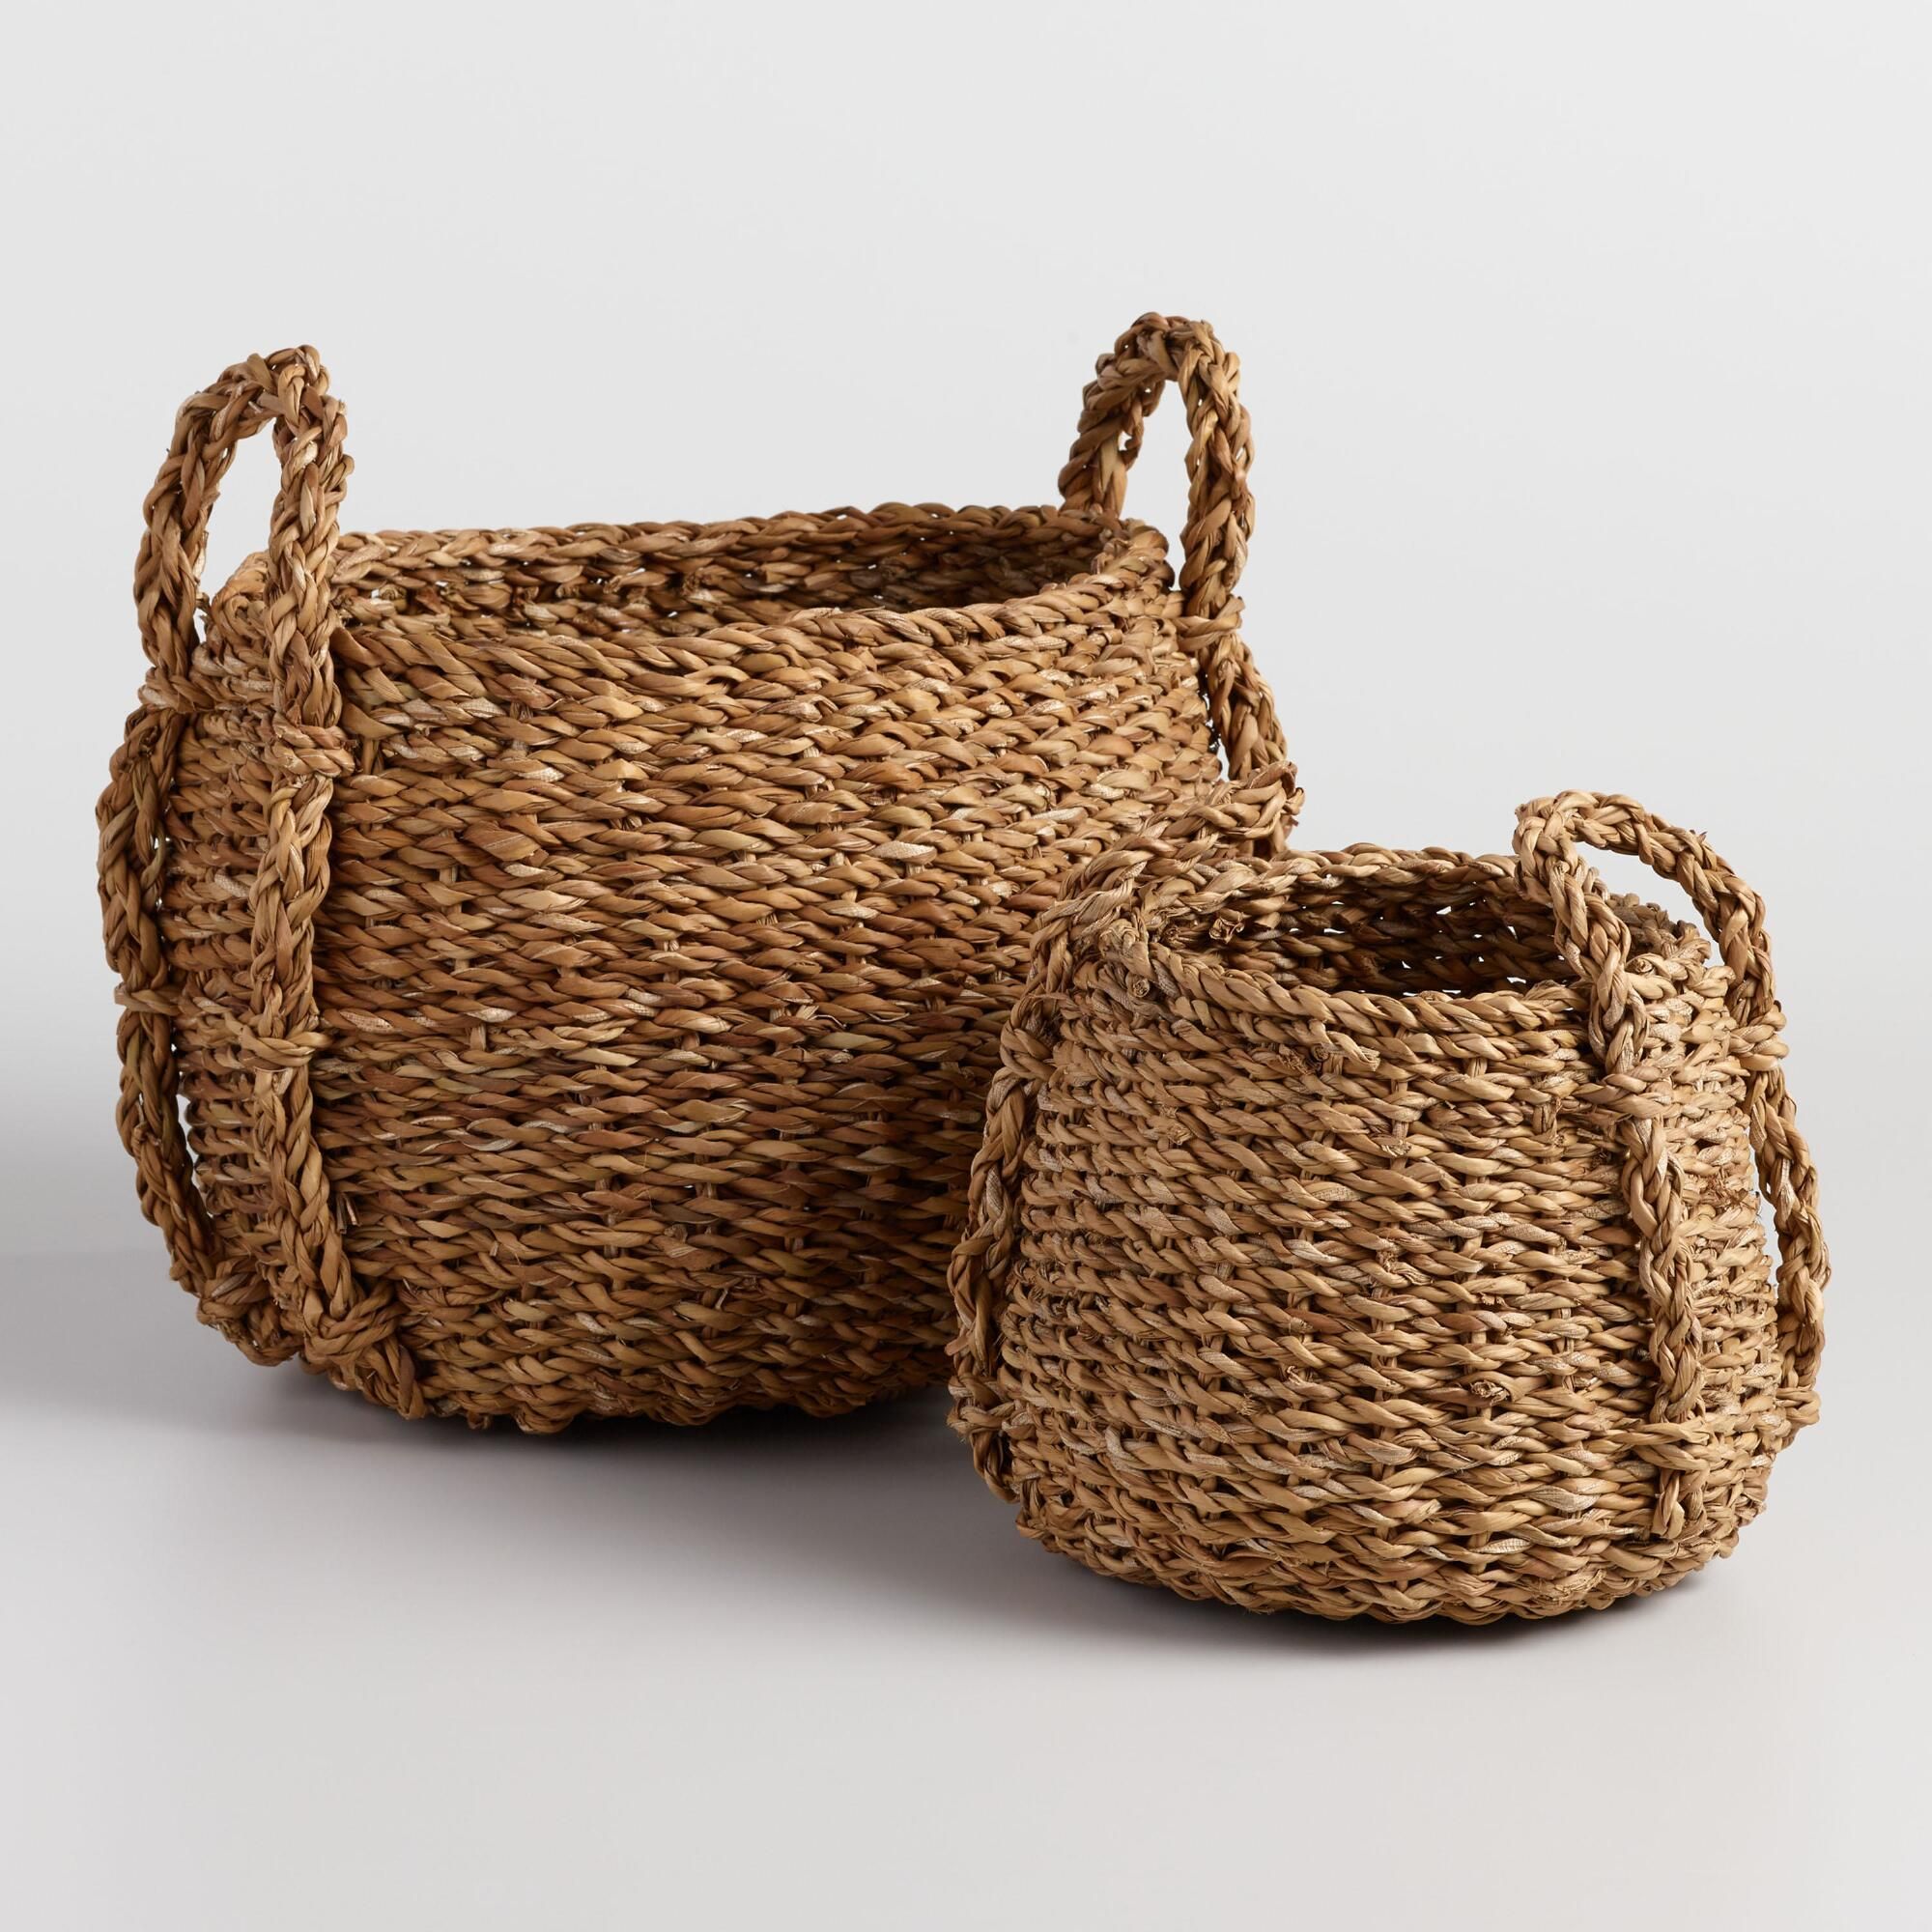 Natural Seagrass Round Jade Tote Baskets - Medium by World Market Medium | World Market